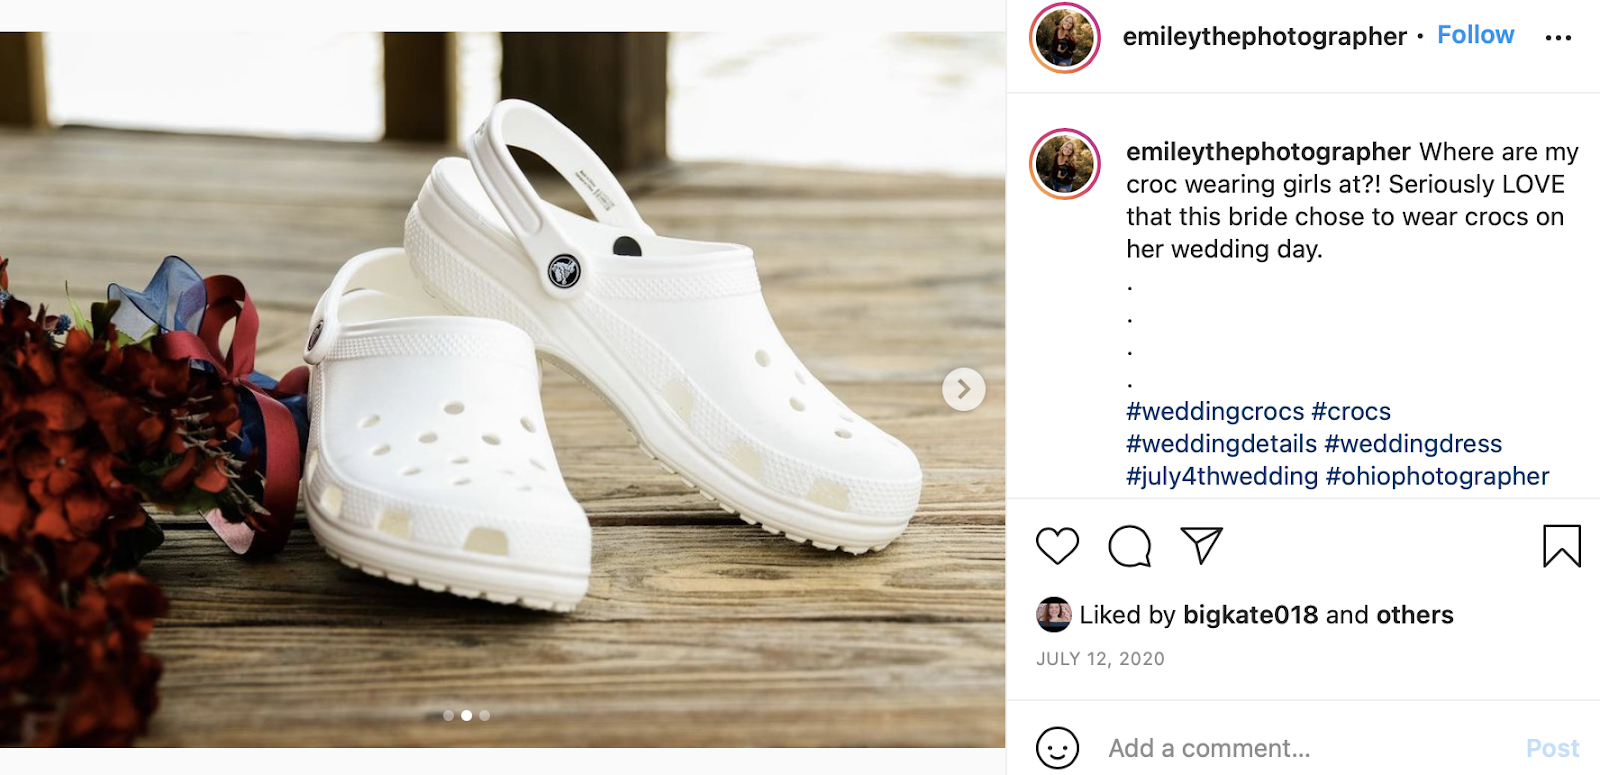 fun wedding idea: croc wedding shoes